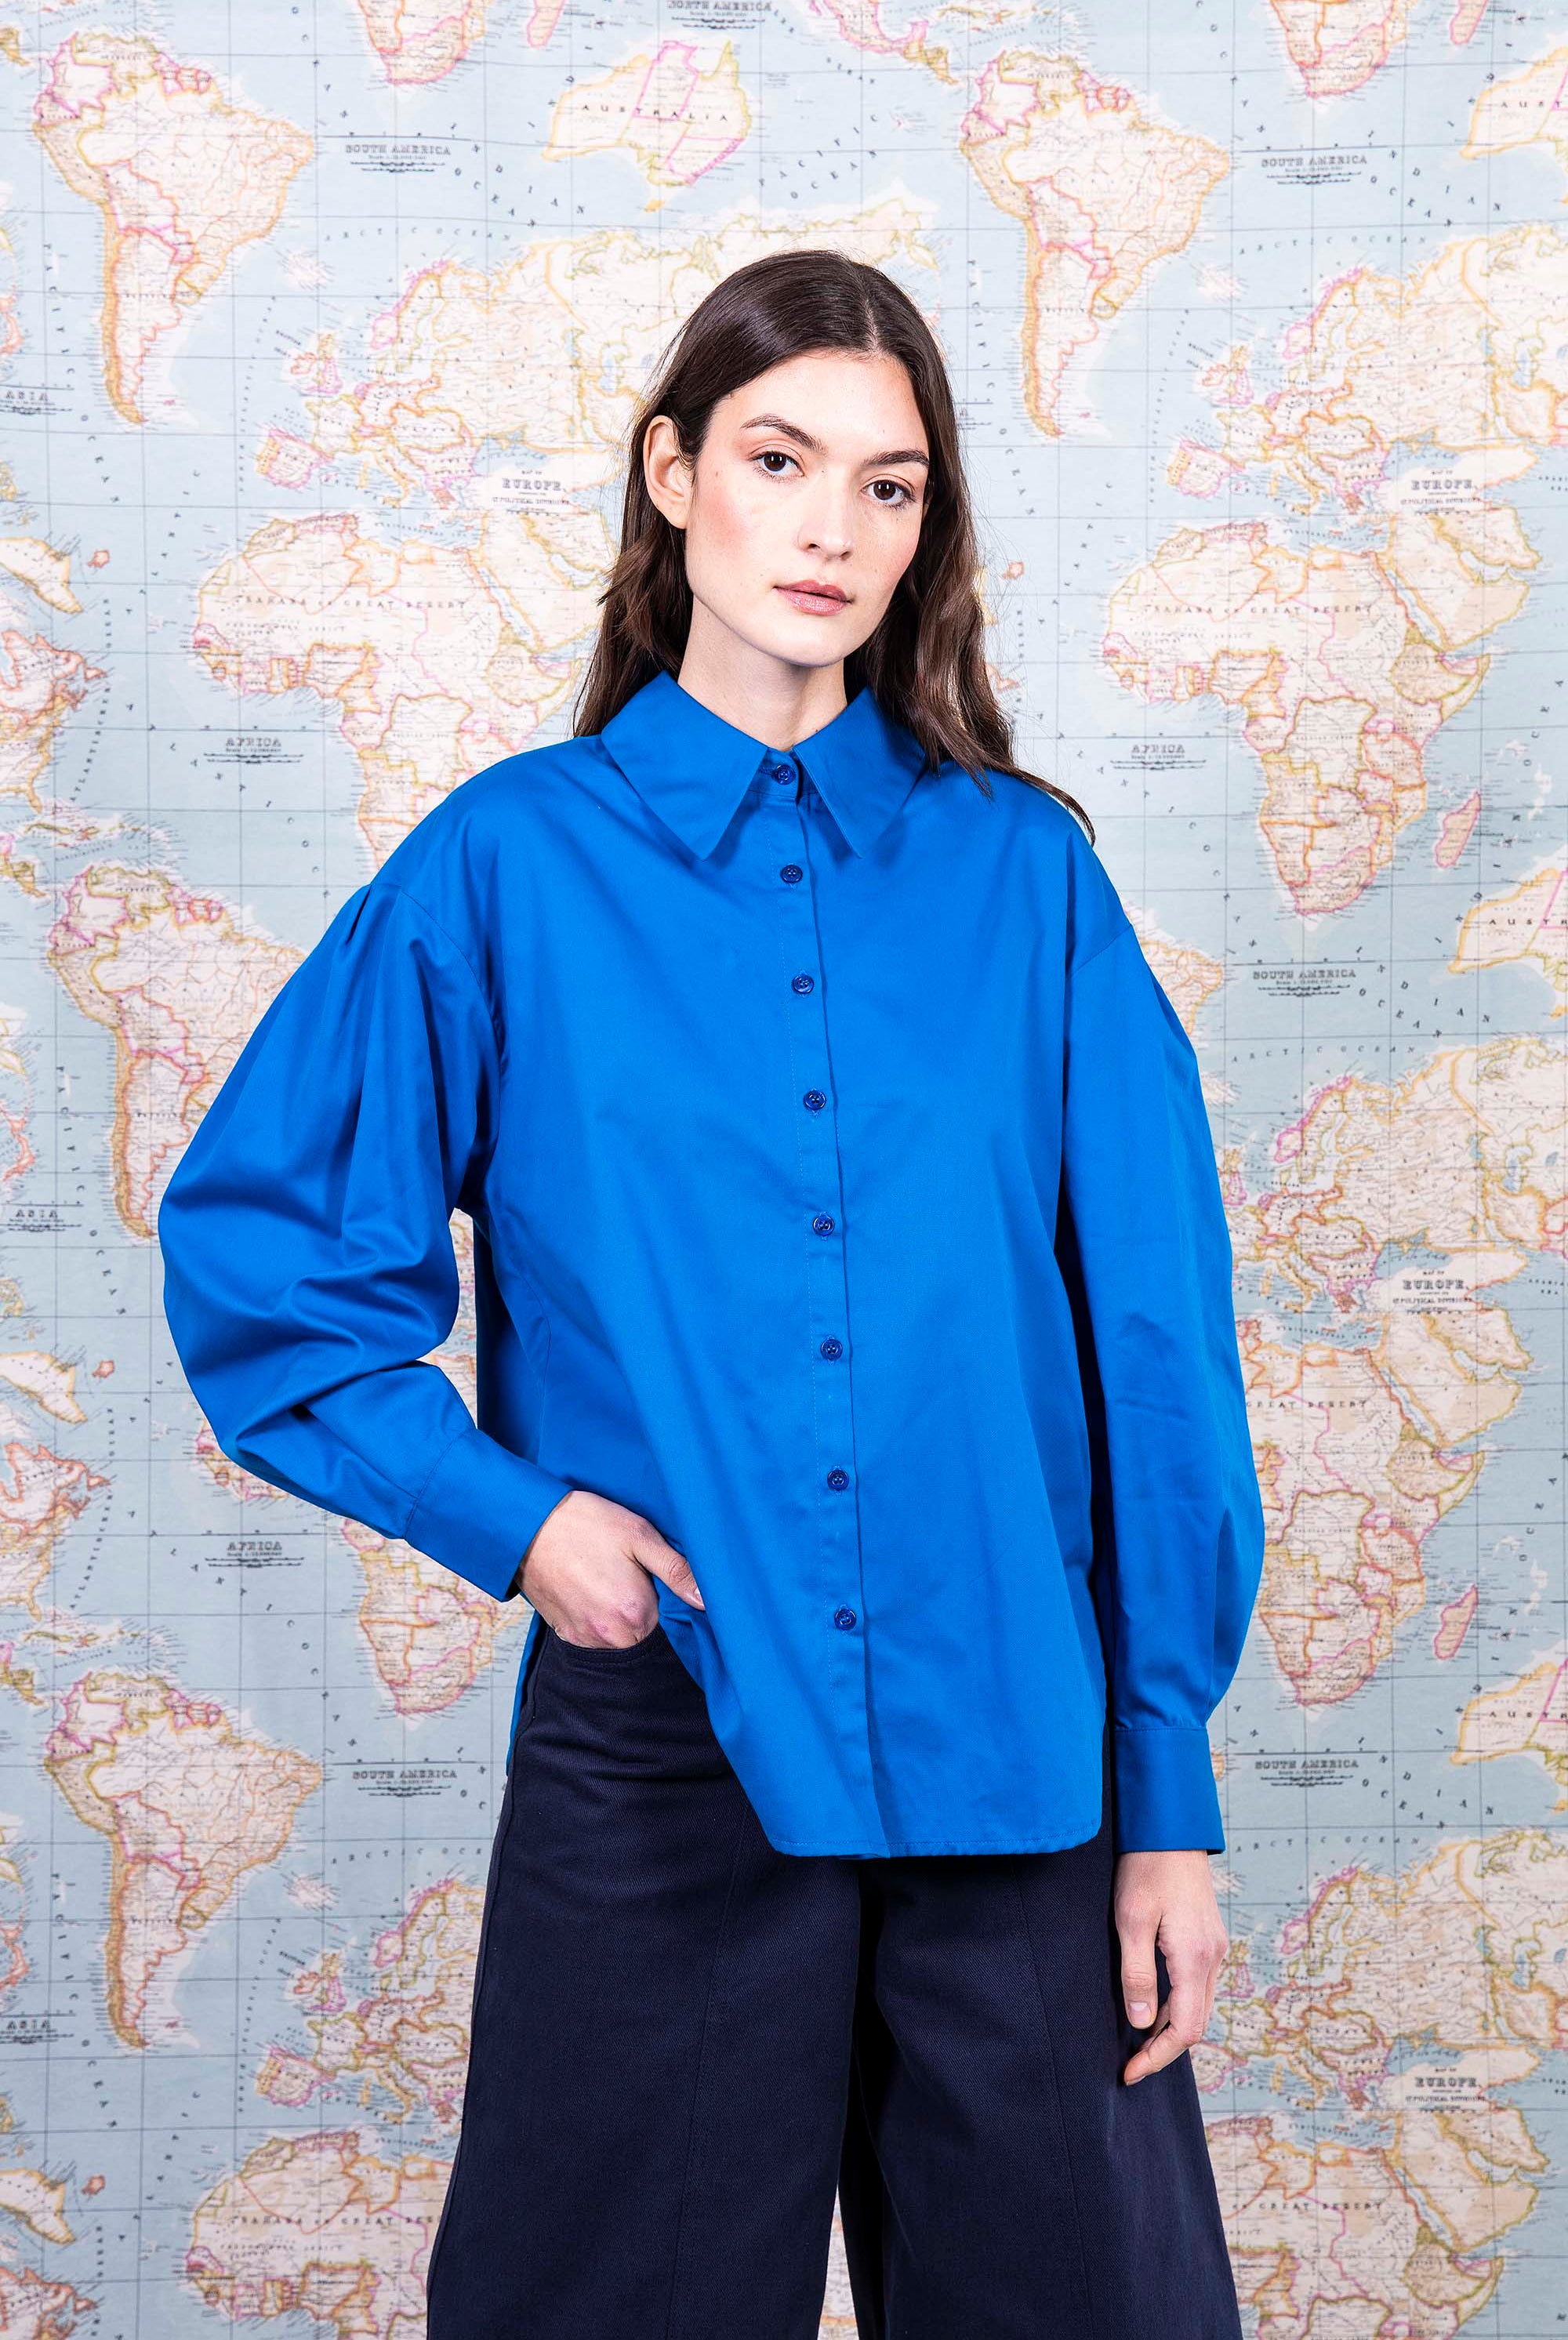 Chemise Nela Bleu classique intemporelle, la chemise dessine la silhouette